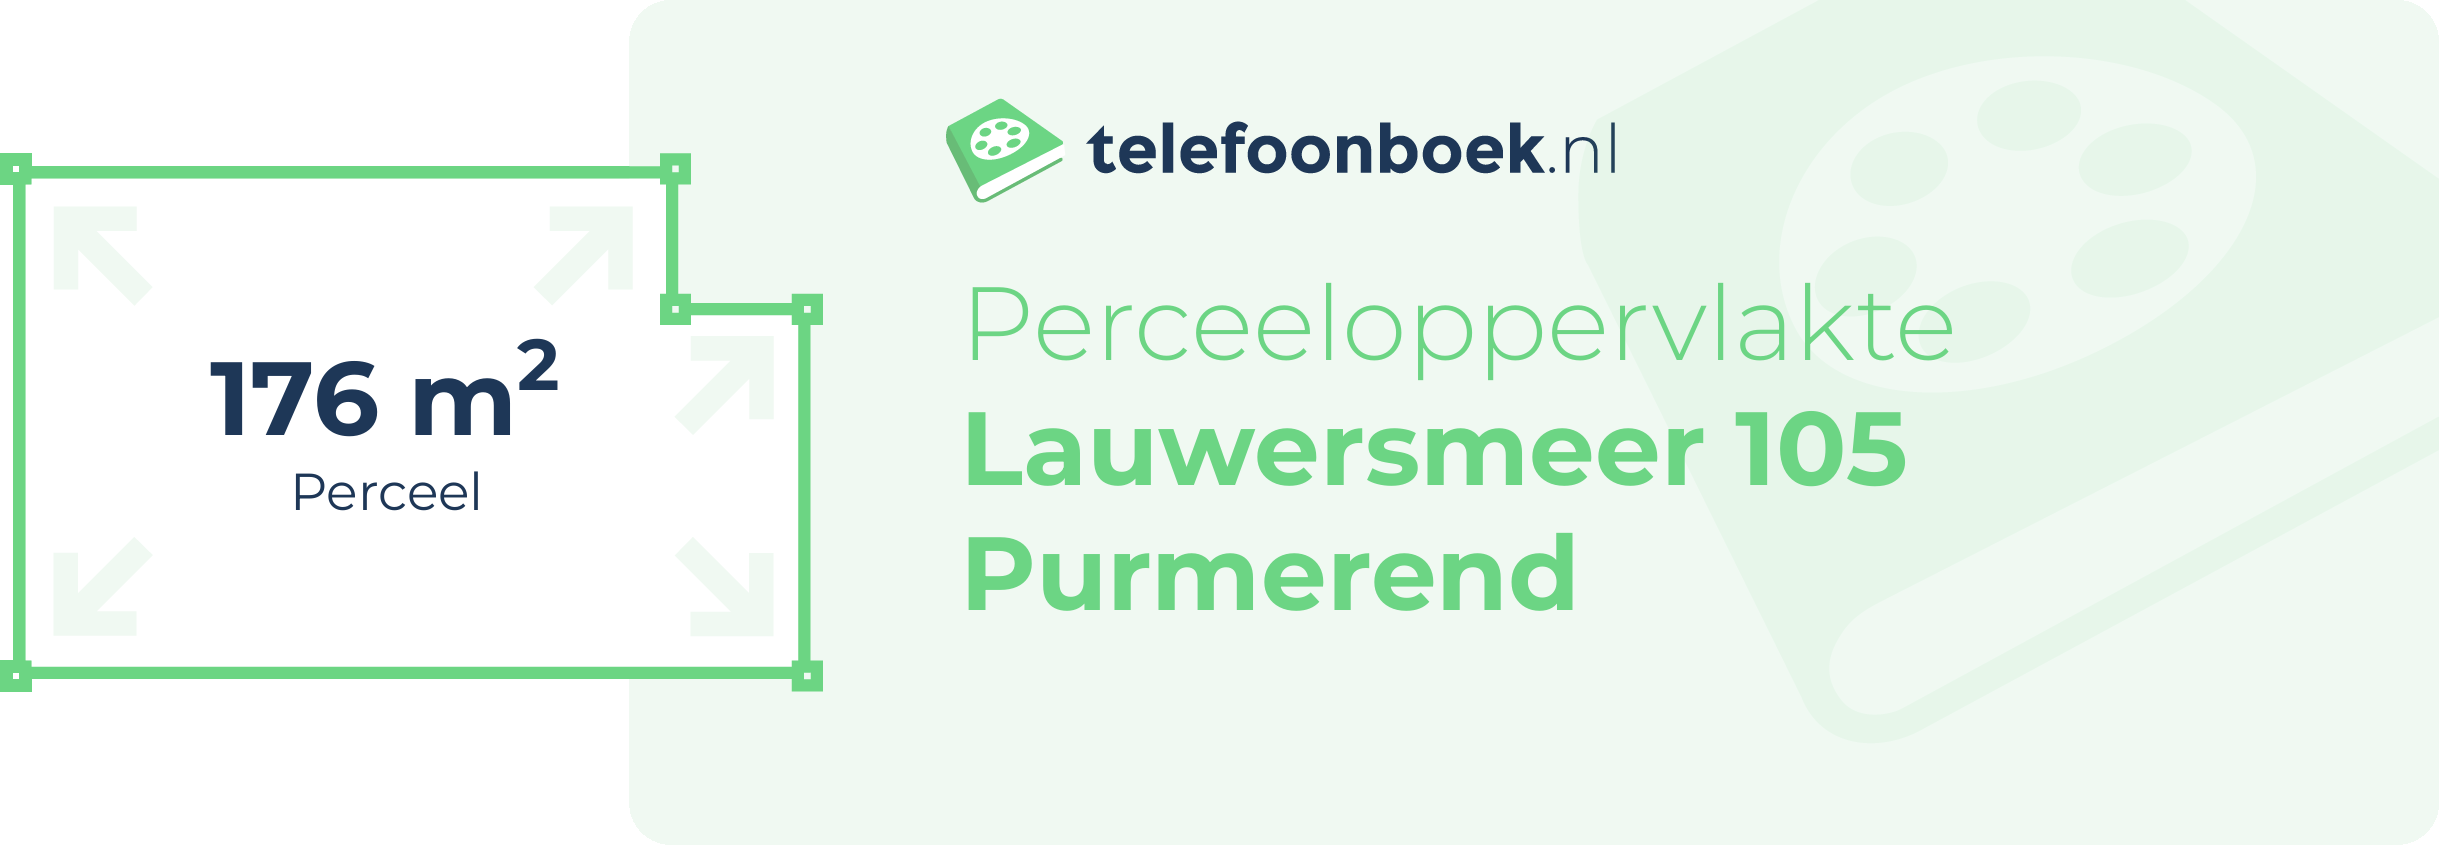 Perceeloppervlakte Lauwersmeer 105 Purmerend